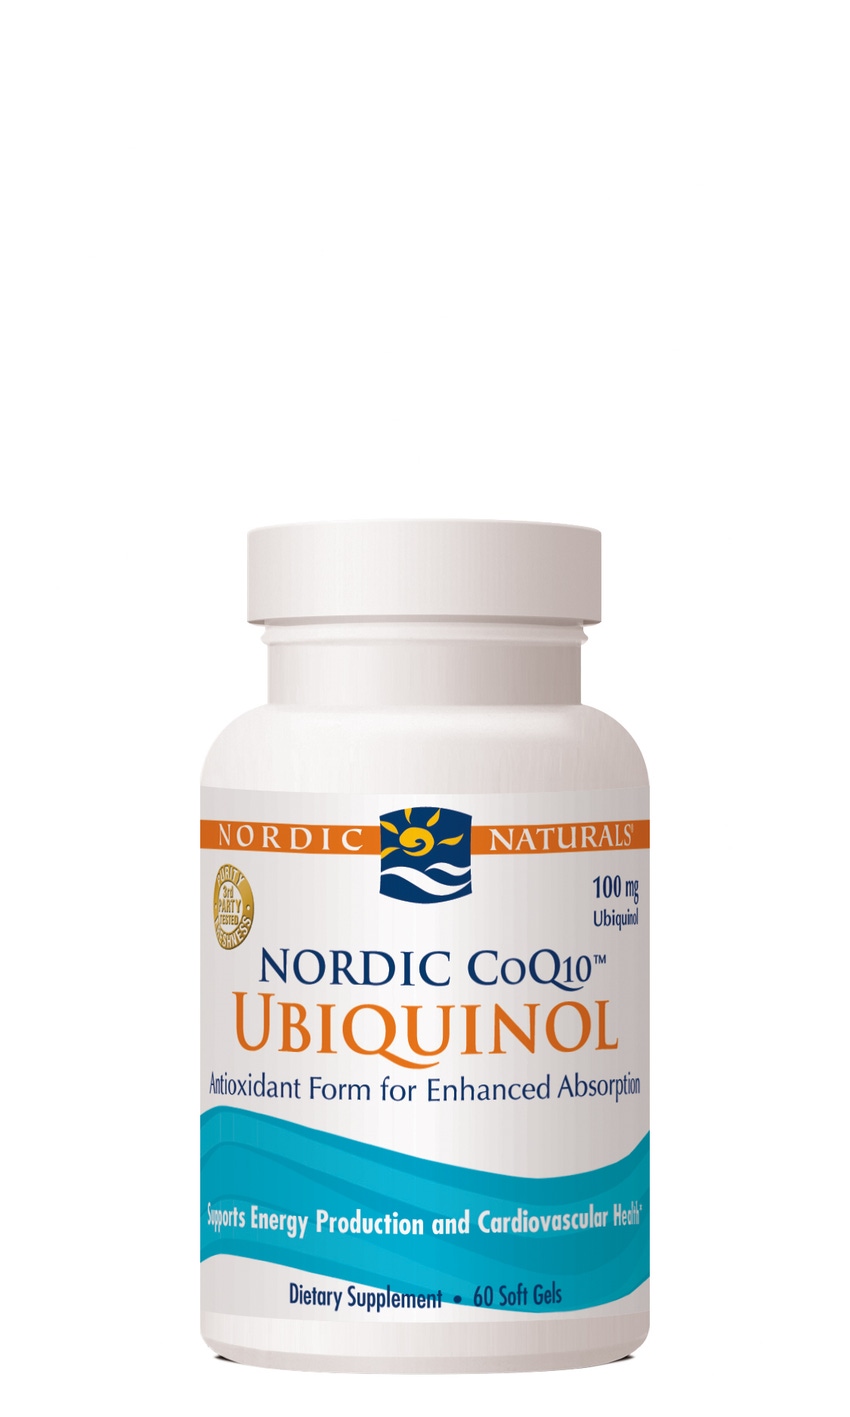 Nordic Naturals debuts Nordic CoQ10 Ubiquinol